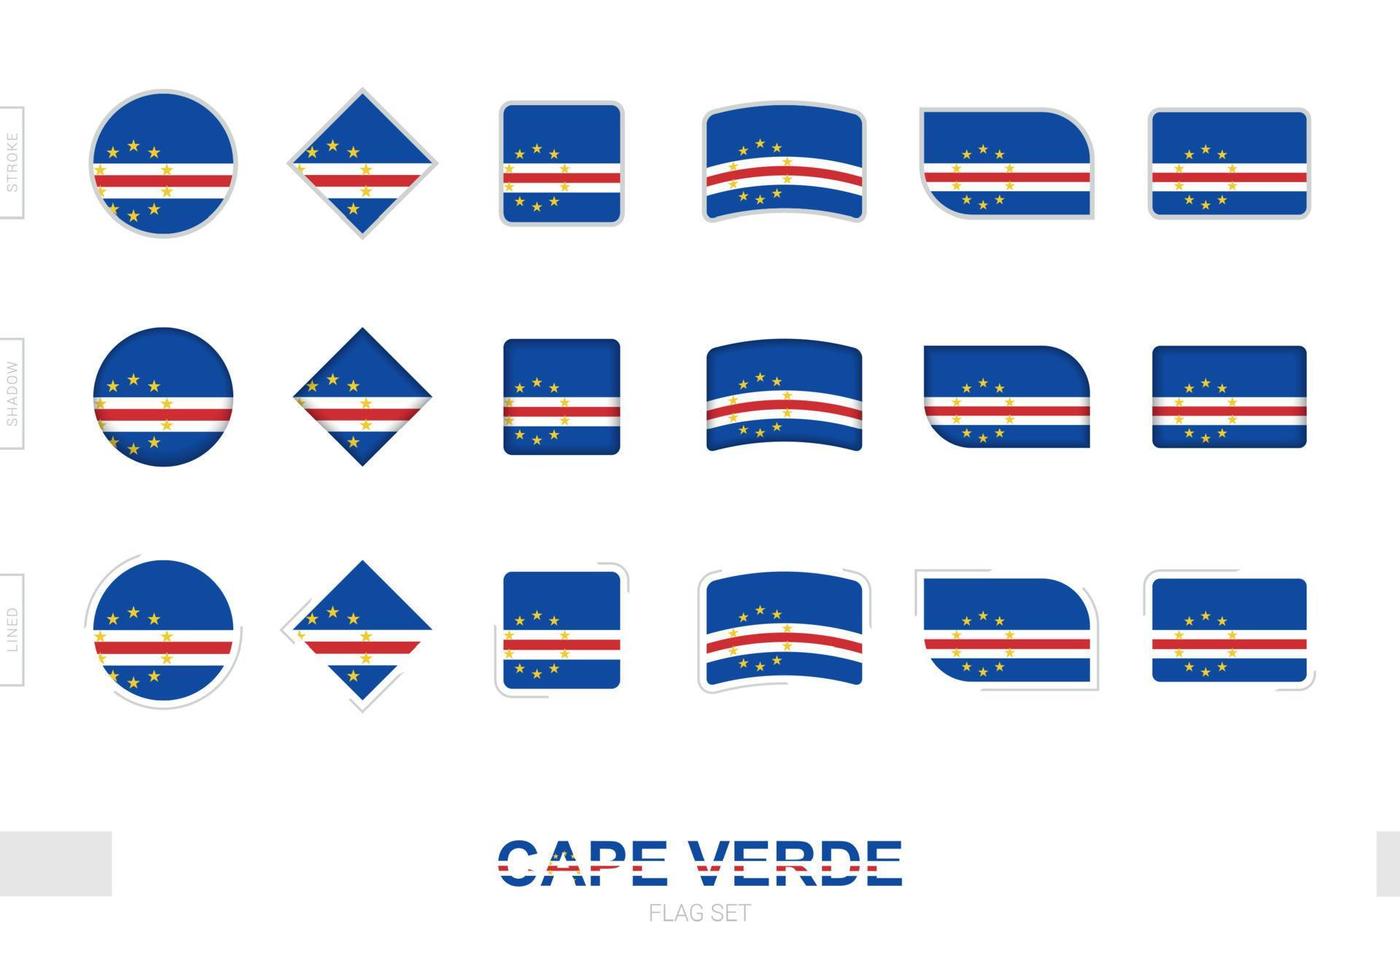 Kaapverdië vlaggenset, eenvoudige vlaggen van Kaapverdië met drie verschillende effecten. vector